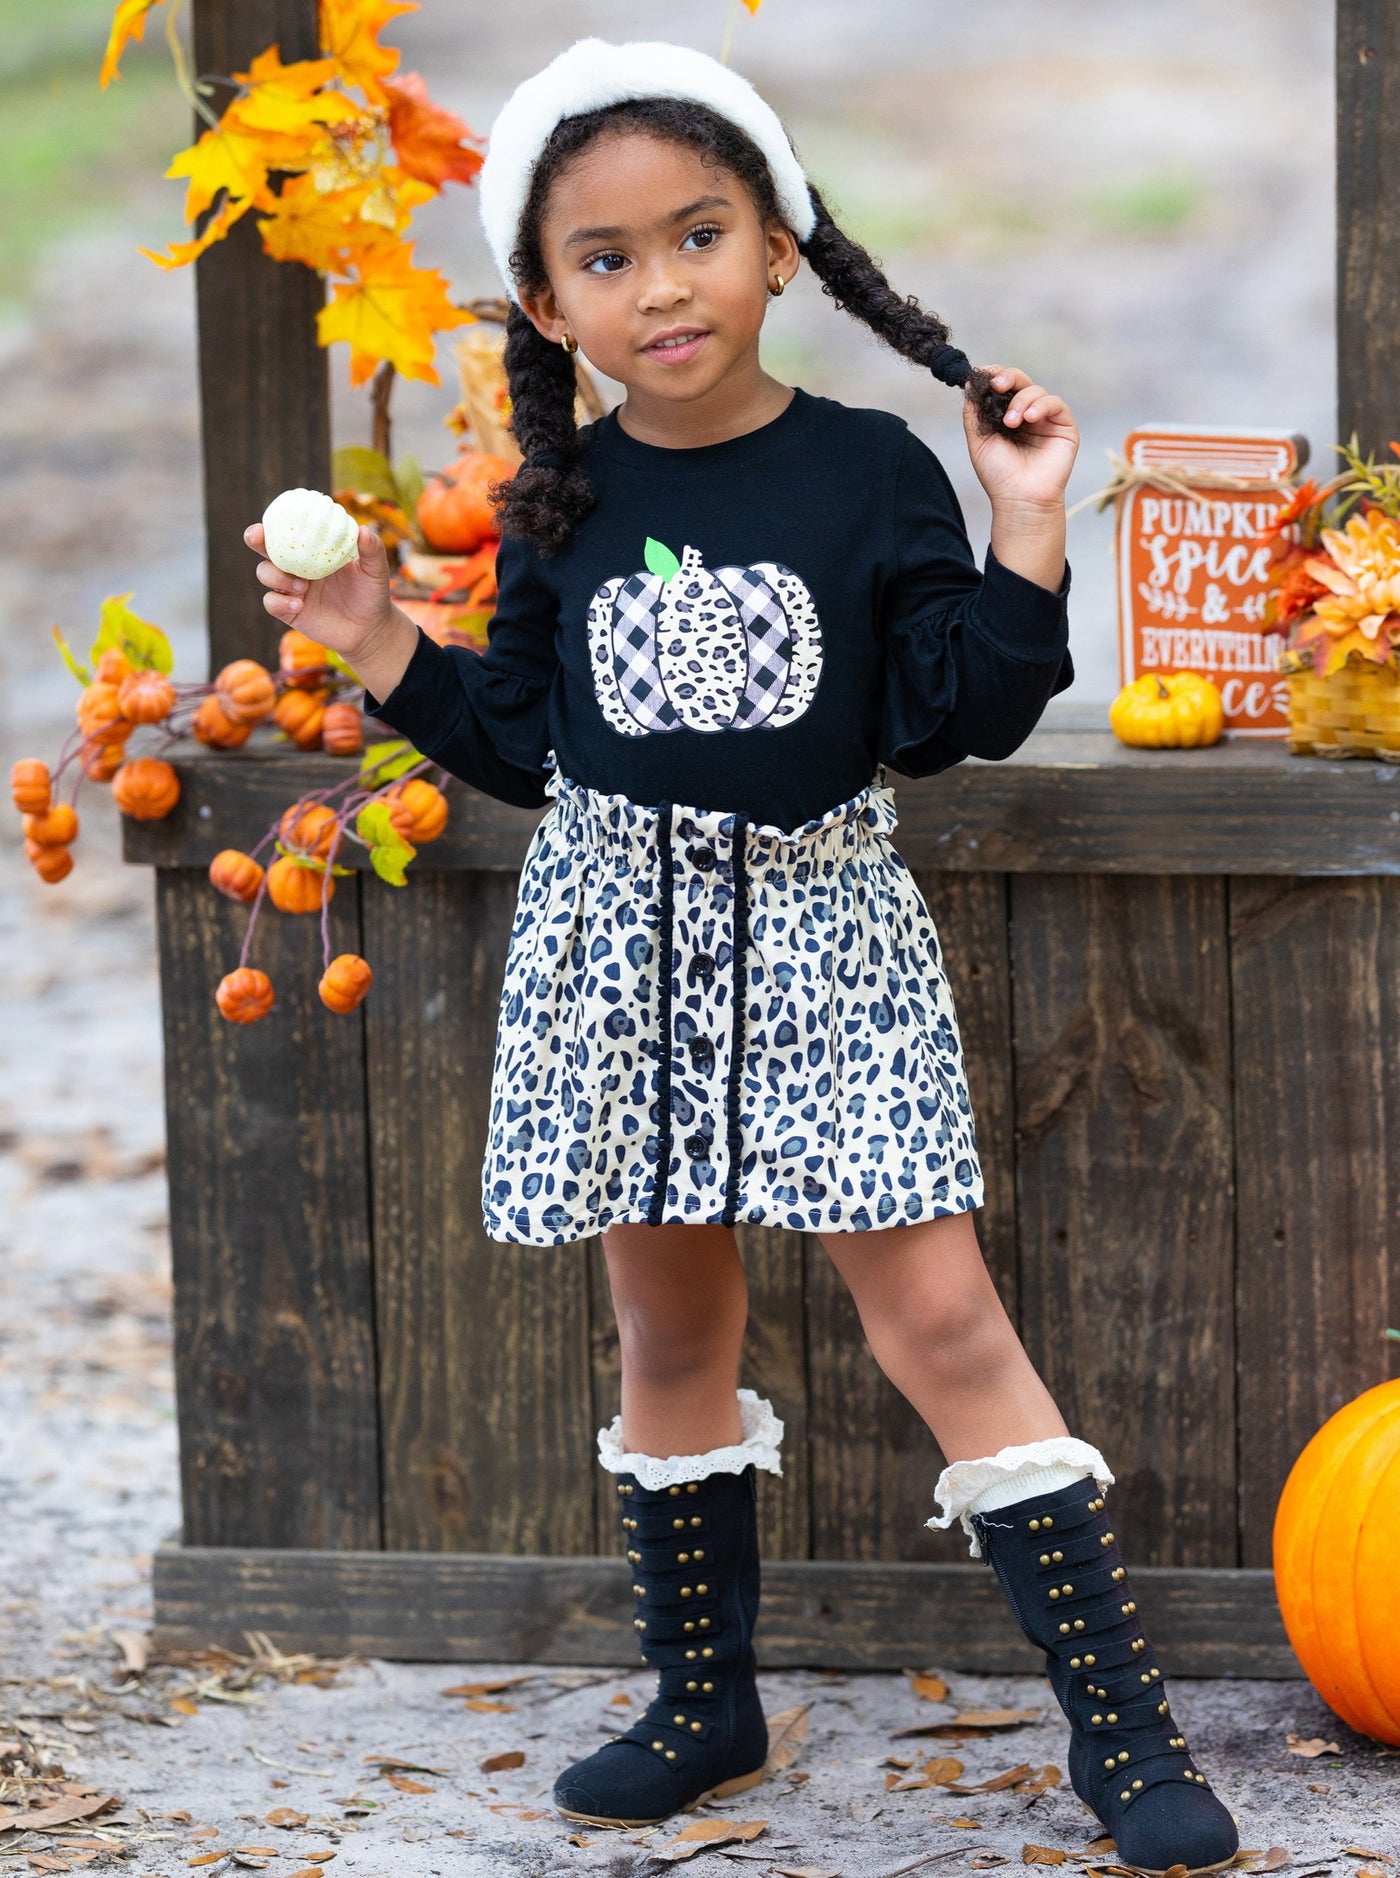 Toddler Fall Outfits | Leopard Print Pumpkin Top & Matching Skirt Set